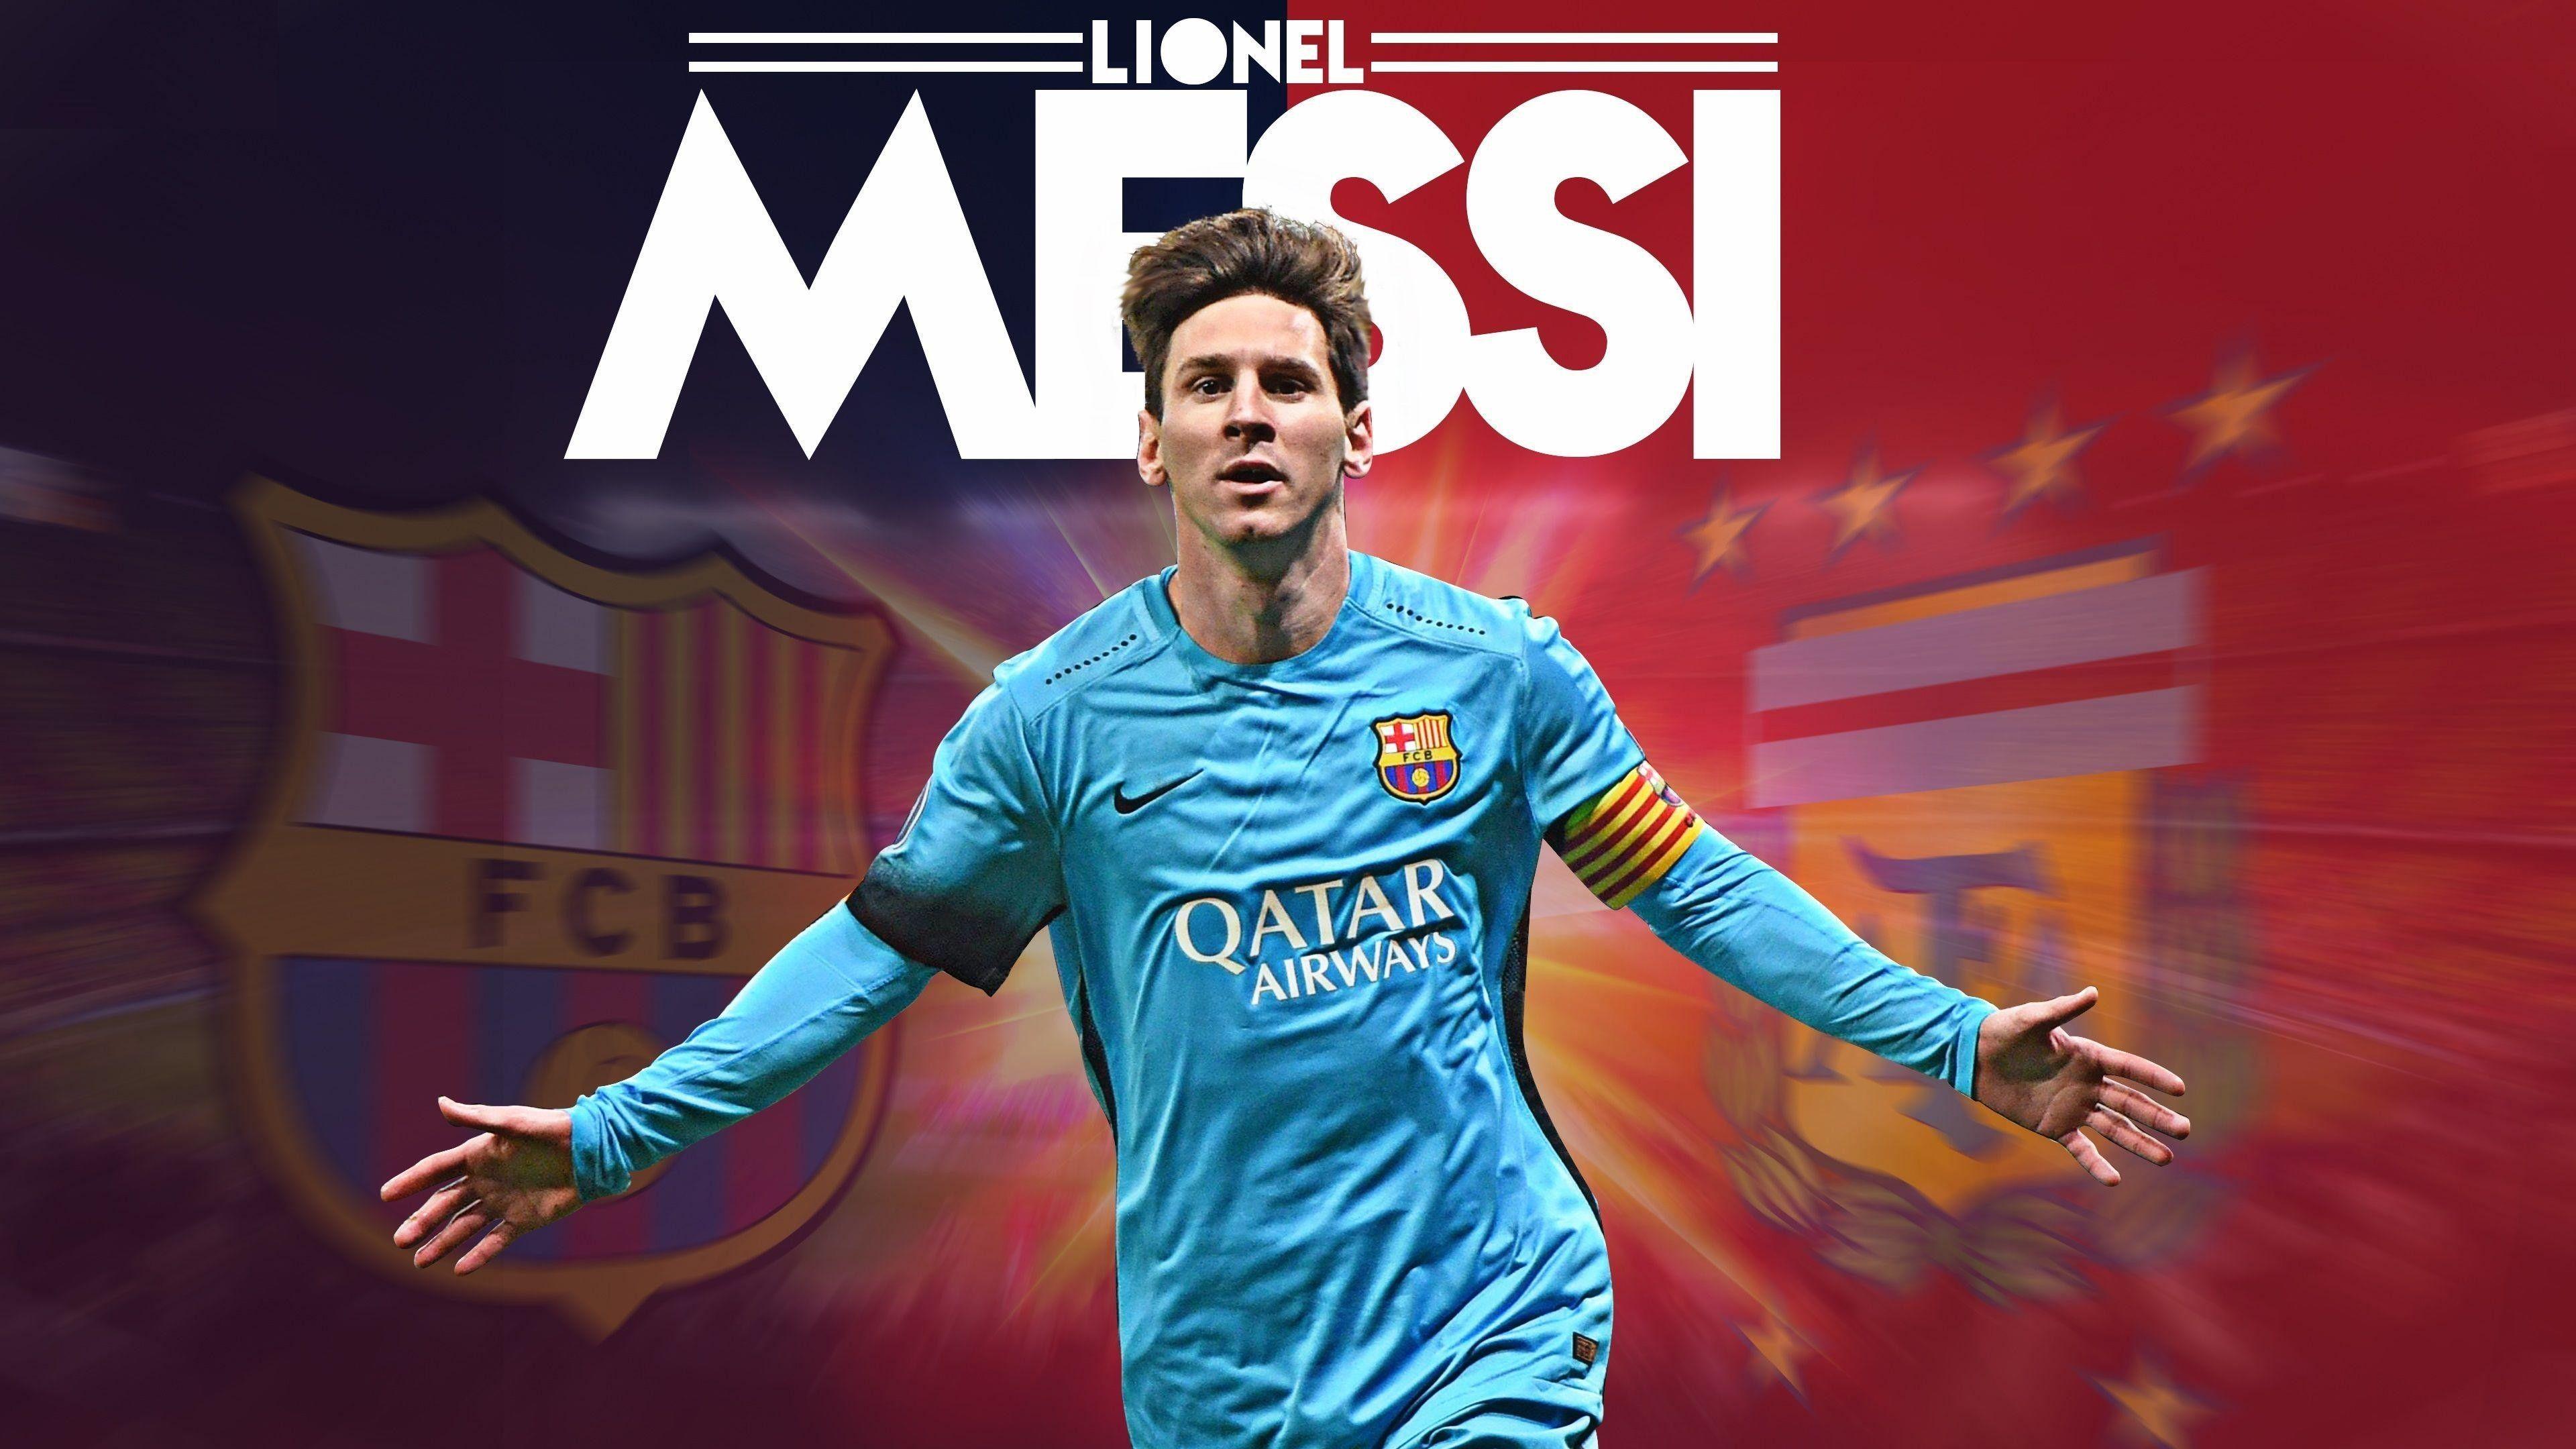 3840x2160 Hình nền Lionel Messi FCB HD 4K Tải xuống - Hình nền 4K độ phân giải cao